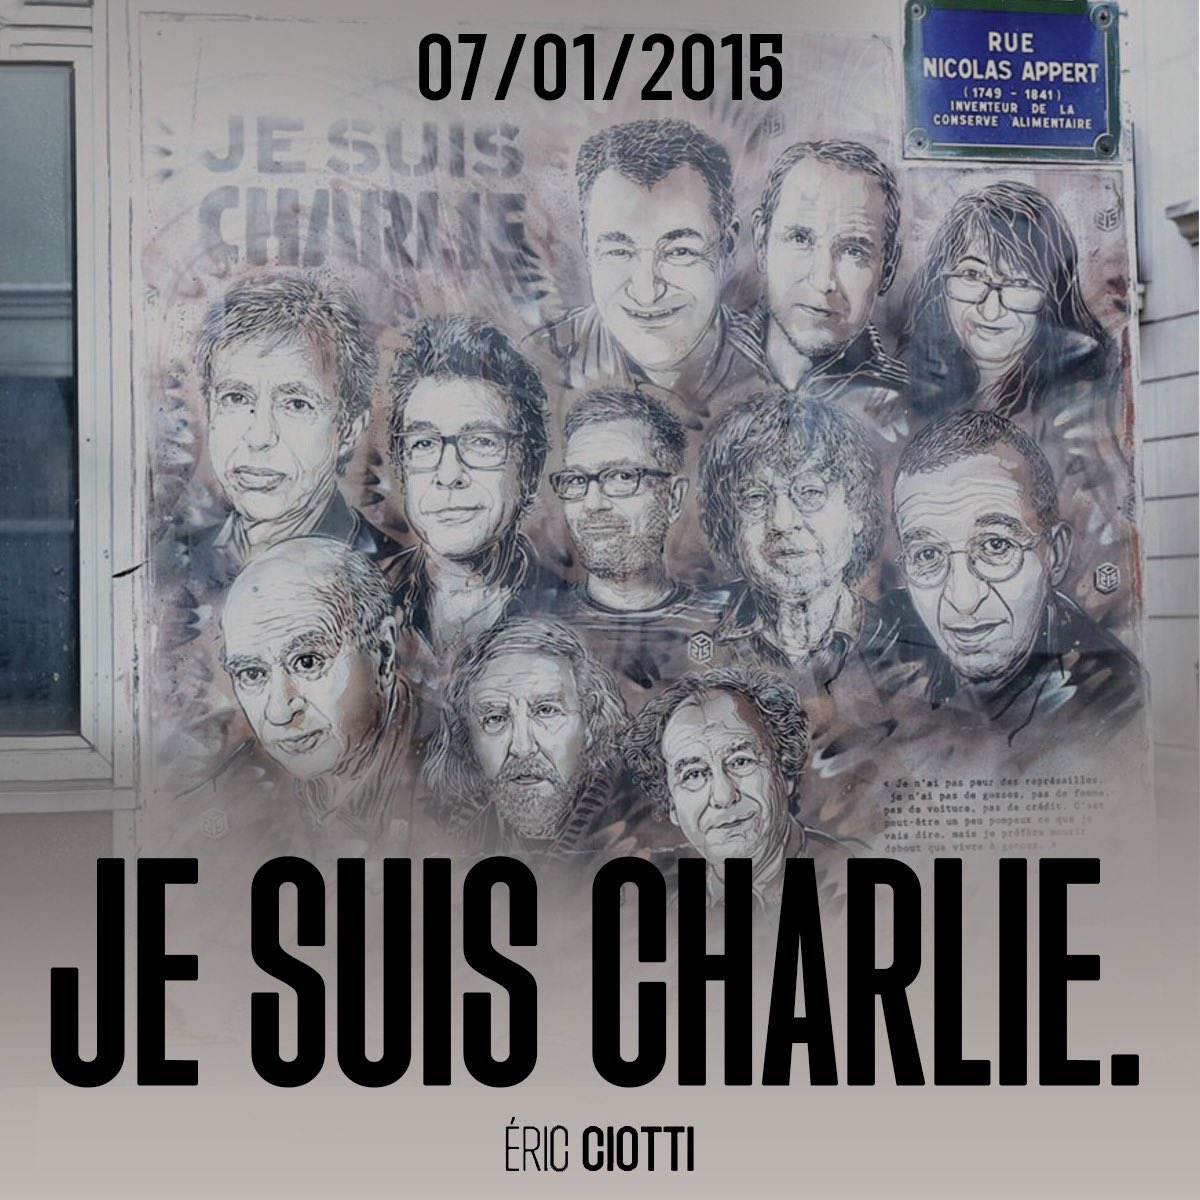 Le 7 janvier 2015, l’attentat terroriste islamiste de Charlie Hebdo causa la mort de 12 personnes. Ce jour-là, c’est notre liberté qui fut attaquée, c’est la France des Lumières que l’on a voulu faire taire. Cabu, Charb, Honoré, Tignous, Wolinski, Franck, Ahmed, Elsa, Frédéric,